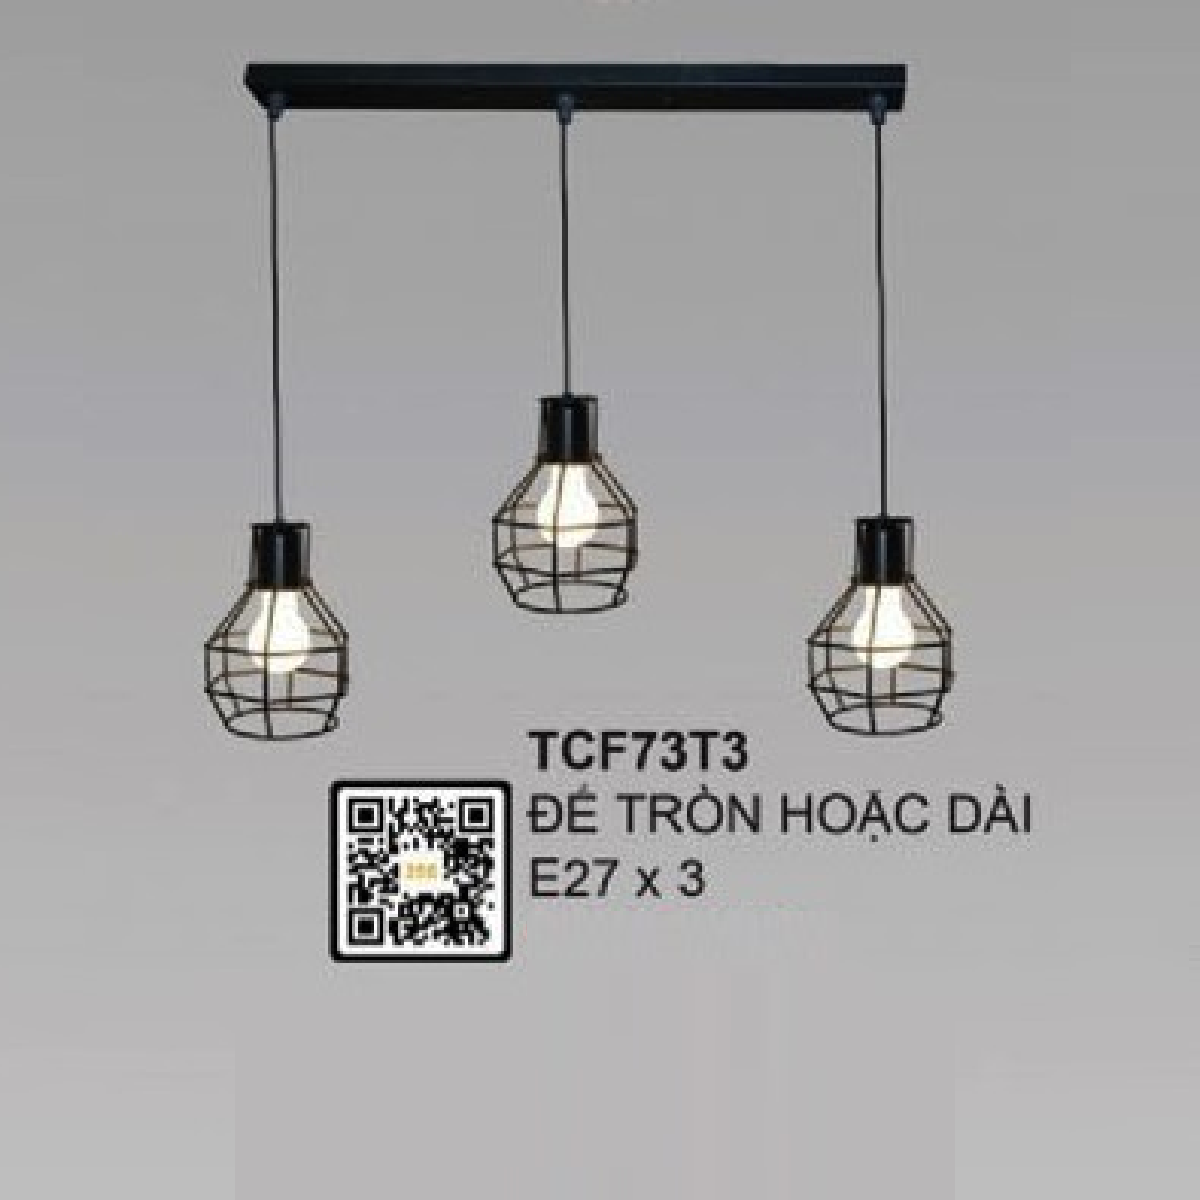 35 - TCF73T3: Bộ đèn thả 3 - Sử dụng đế tròn hoặc đế dài - Bóng đèn E27 x 3 bóng